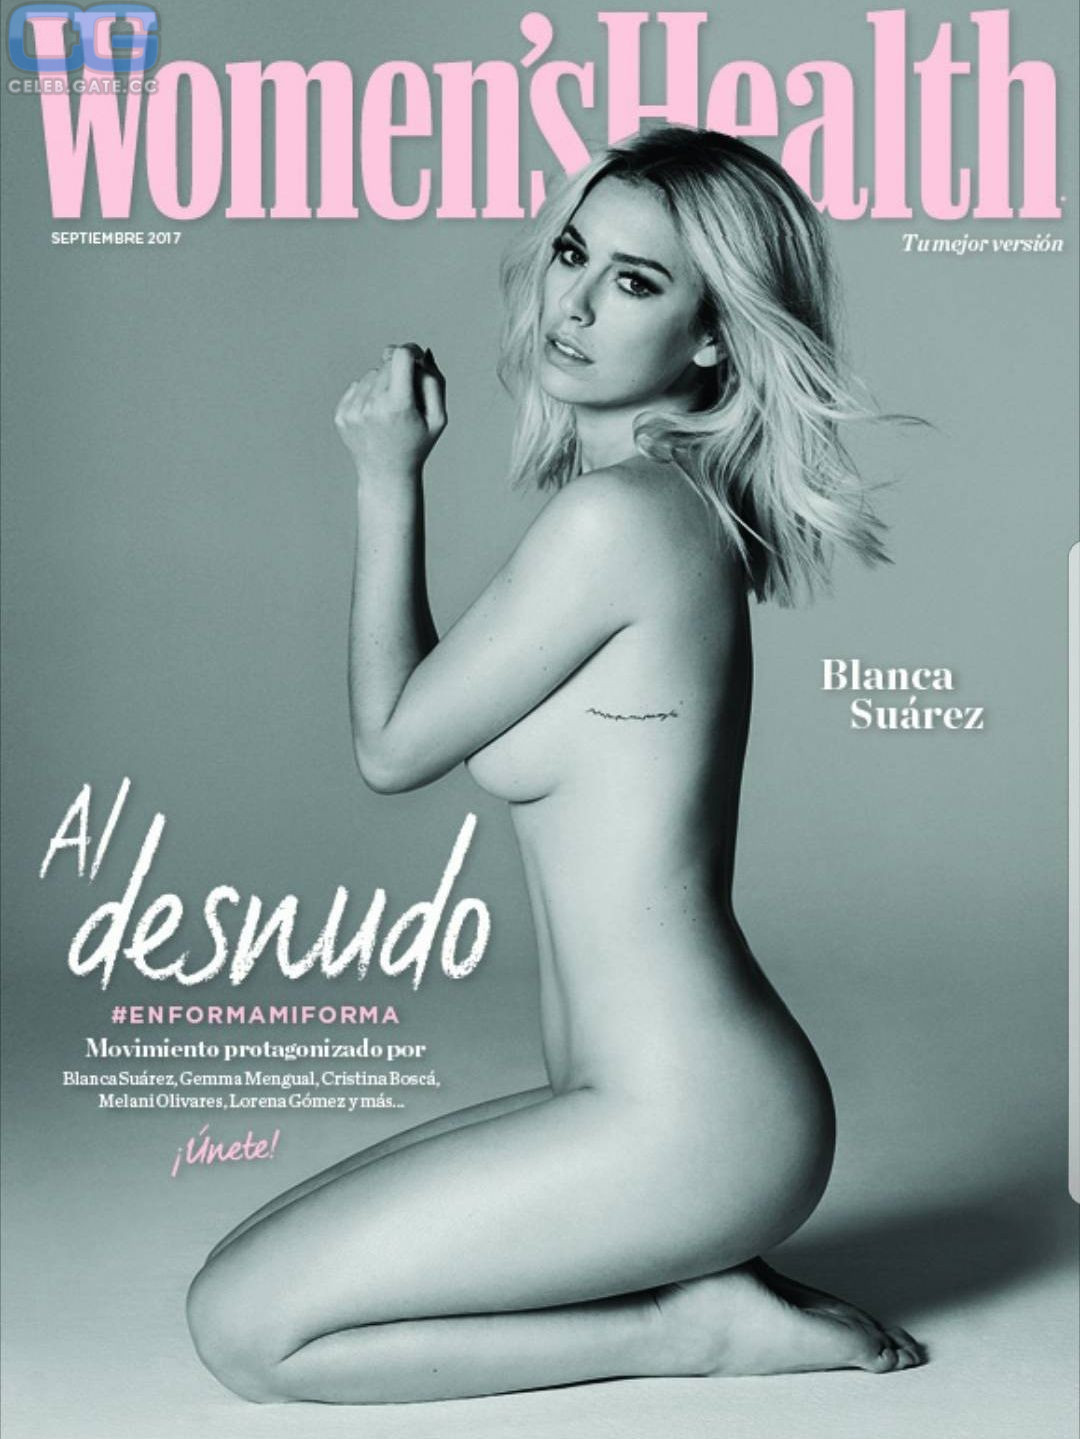 Blanca Suarez naked